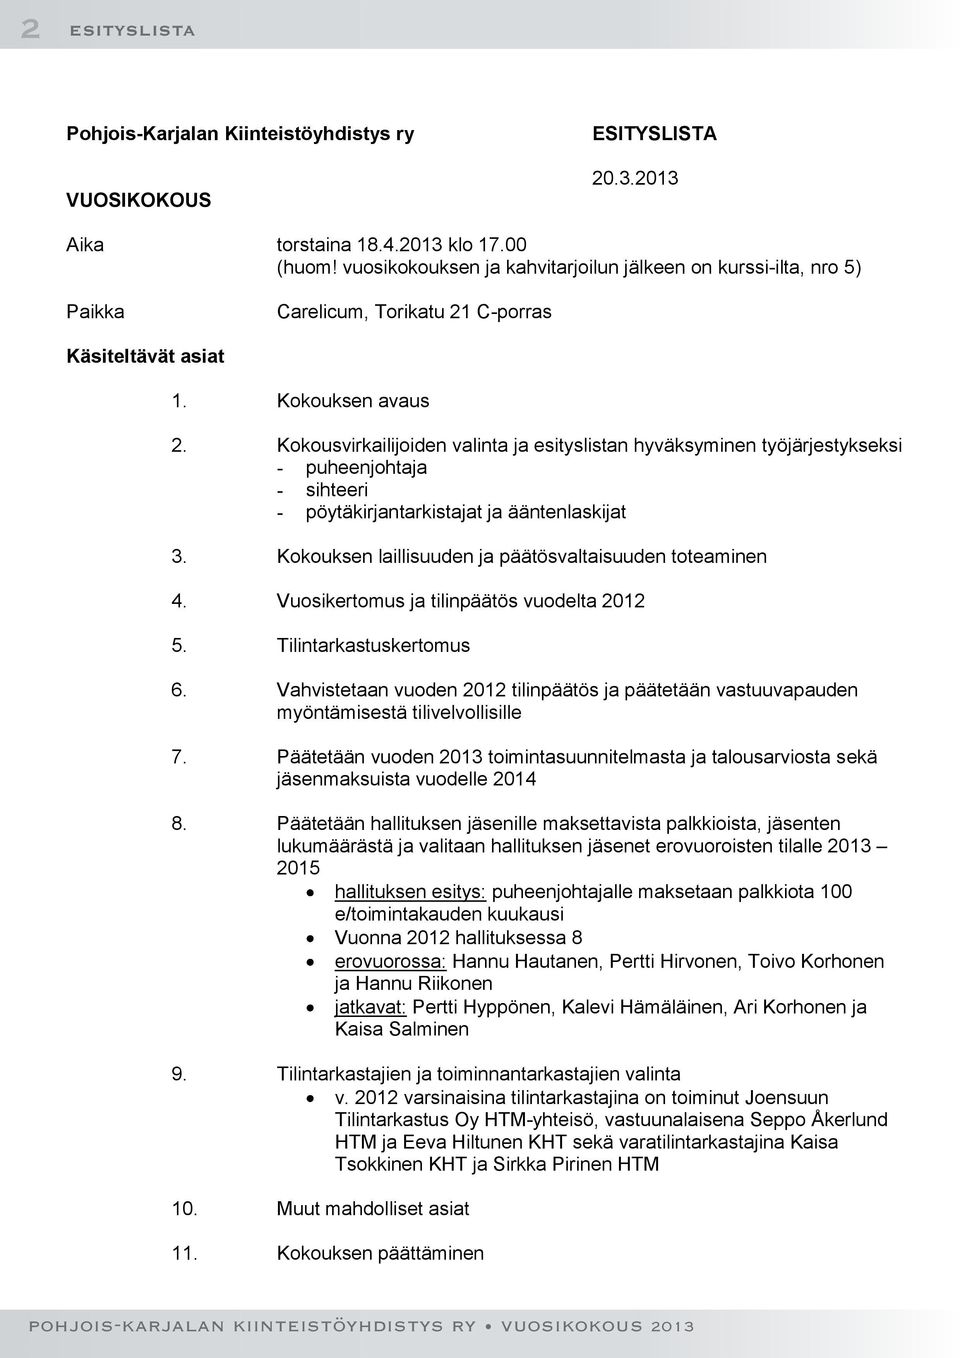 Kokousvirkailijoiden valinta ja esityslistan hyväksyminen työjärjestykseksi - puheenjohtaja - sihteeri - pöytäkirjantarkistajat ja ääntenlaskijat 3.